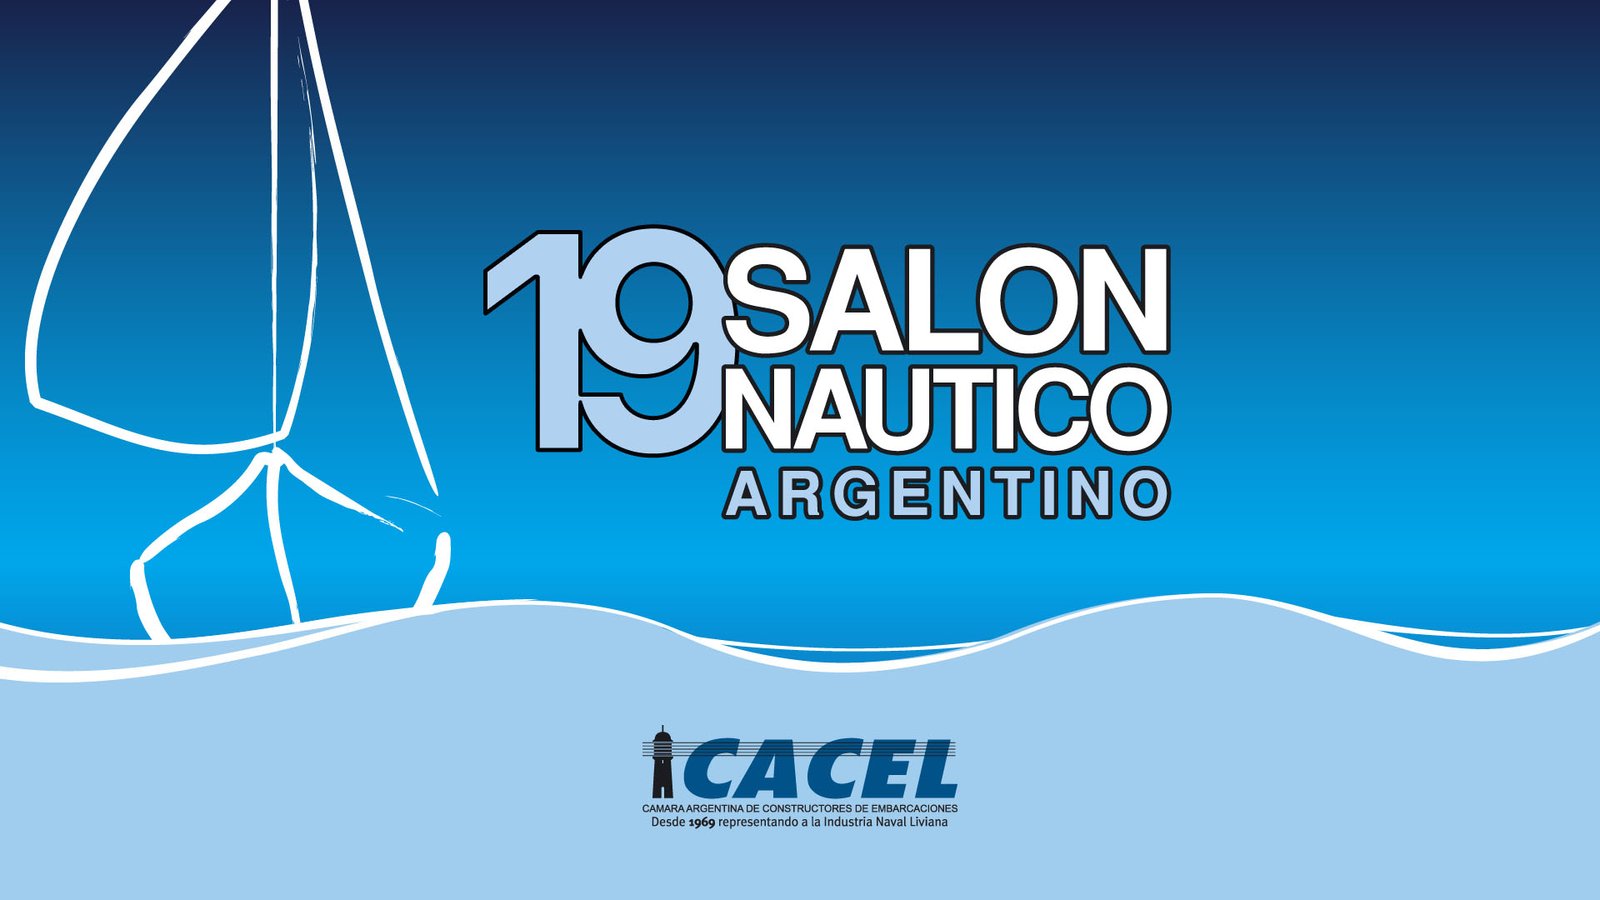 19 salon nautico argentino